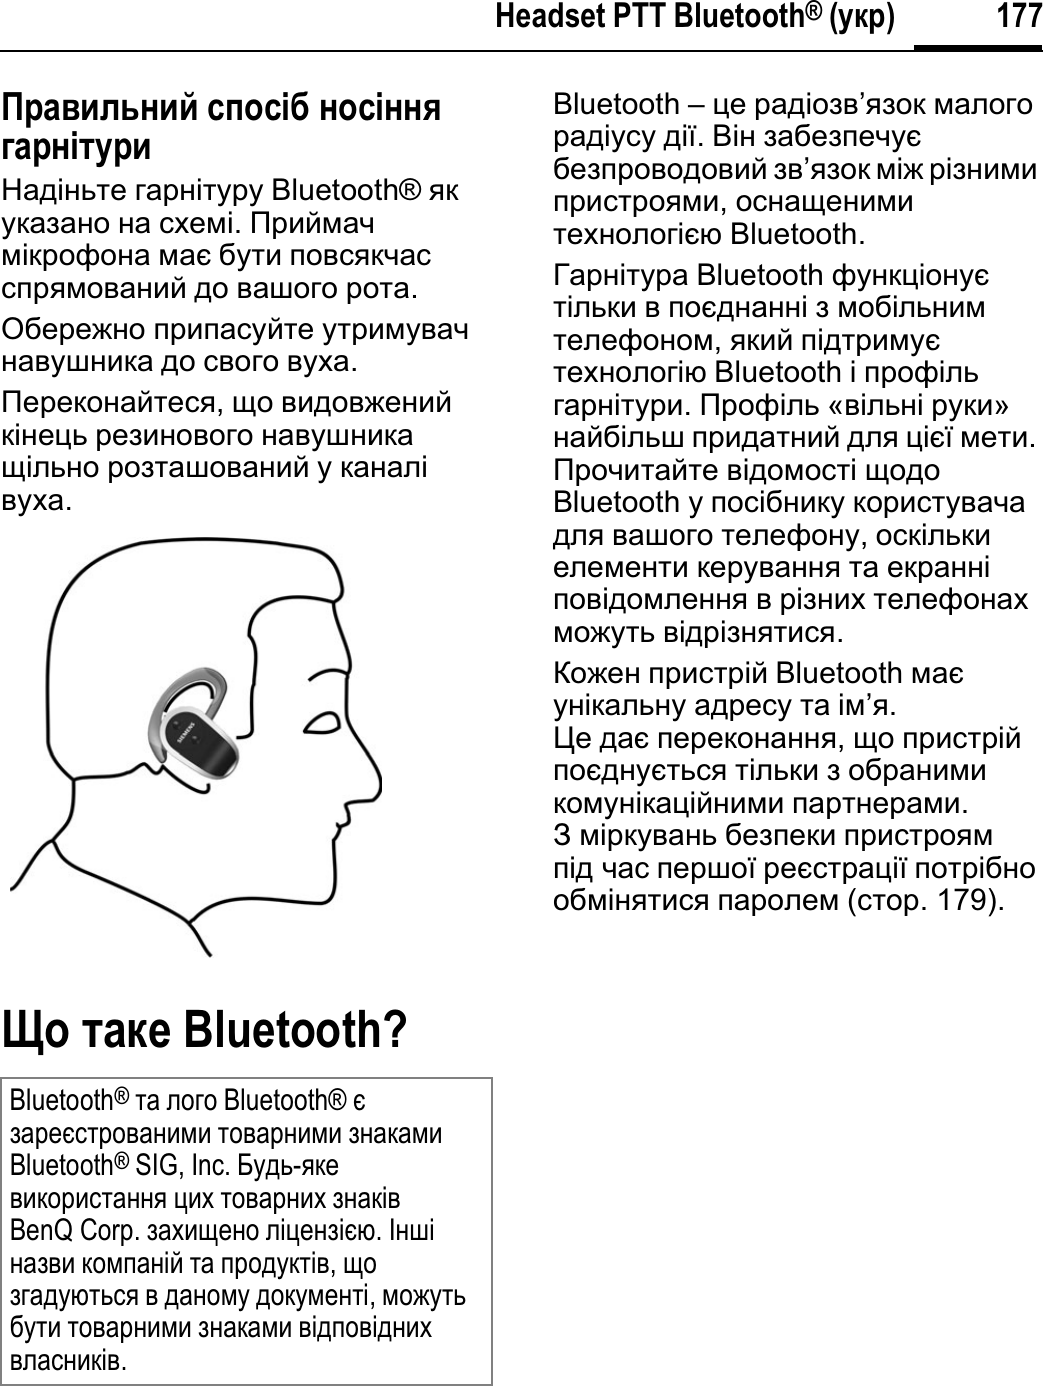 177Headset PTT Bluetooth® (ɮɥɫ)Ɋɫɛɝɣɦɷɨɣɤ ɬɪɩɬʀɜ ɨɩɬʀɨɨɺɞɛɫɨʀɭɮɫɣɇɚɞɿɧɶɬɟ ɝɚɪɧɿɬɭɪɭ Bluetooth® ɹɤɭɤɚɡɚɧɨ ɧɚ ɫɯɟɦɿ.ɉɪɢɣɦɚɱɦɿɤɪɨɮɨɧɚ ɦɚɽ ɛɭɬɢ ɩɨɜɫɹɤɱɚɫɫɩɪɹɦɨɜɚɧɢɣ ɞɨ ɜɚɲɨɝɨ ɪɨɬɚ.Ɉɛɟɪɟɠɧɨ ɩɪɢɩɚɫɭɣɬɟ ɭɬɪɢɦɭɜɚɱɧɚɜɭɲɧɢɤɚ ɞɨ ɫɜɨɝɨ ɜɭɯɚ.ɉɟɪɟɤɨɧɚɣɬɟɫɹ,ɳɨ ɜɢɞɨɜɠɟɧɢɣɤɿɧɟɰɶ ɪɟɡɢɧɨɜɨɝɨ ɧɚɜɭɲɧɢɤɚɳɿɥɶɧɨ ɪɨɡɬɚɲɨɜɚɧɢɣ ɭ ɤɚɧɚɥɿɜɭɯɚ.ɔɩ ɭɛɥɠ Bluetooth?Bluetooth – ɰɟ ɪɚɞɿɨɡɜ’ɹɡɨɤ ɦɚɥɨɝɨɪɚɞɿɭɫɭ ɞɿʀ.ȼɿɧ ɡɚɛɟɡɩɟɱɭɽɛɟɡɩɪɨɜɨɞɨɜɢɣ ɡɜ’ɹɡɨɤ ɦɿɠ ɪɿɡɧɢɦɢɩɪɢɫɬɪɨɹɦɢ,ɨɫɧɚɳɟɧɢɦɢɬɟɯɧɨɥɨɝɿɽɸ Bluetooth.Ƚɚɪɧɿɬɭɪɚ Bluetooth ɮɭɧɤɰɿɨɧɭɽɬɿɥɶɤɢ ɜ ɩɨɽɞɧɚɧɧɿ ɡ ɦɨɛɿɥɶɧɢɦɬɟɥɟɮɨɧɨɦ,ɹɤɢɣ ɩɿɞɬɪɢɦɭɽɬɟɯɧɨɥɨɝɿɸ Bluetooth ɿ ɩɪɨɮɿɥɶɝɚɪɧɿɬɭɪɢ.ɉɪɨɮɿɥɶ «ɜɿɥɶɧɿ ɪɭɤɢ»ɧɚɣɛɿɥɶɲ ɩɪɢɞɚɬɧɢɣ ɞɥɹ ɰɿɽʀ ɦɟɬɢ.ɉɪɨɱɢɬɚɣɬɟ ɜɿɞɨɦɨɫɬɿ ɳɨɞɨBluetooth ɭ ɩɨɫɿɛɧɢɤɭ ɤɨɪɢɫɬɭɜɚɱɚɞɥɹ ɜɚɲɨɝɨ ɬɟɥɟɮɨɧɭ,ɨɫɤɿɥɶɤɢɟɥɟɦɟɧɬɢ ɤɟɪɭɜɚɧɧɹ ɬɚ ɟɤɪɚɧɧɿɩɨɜɿɞɨɦɥɟɧɧɹ ɜ ɪɿɡɧɢɯ ɬɟɥɟɮɨɧɚɯɦɨɠɭɬɶ ɜɿɞɪɿɡɧɹɬɢɫɹ.Ʉɨɠɟɧ ɩɪɢɫɬɪɿɣ Bluetooth ɦɚɽɭɧɿɤɚɥɶɧɭ ɚɞɪɟɫɭ ɬɚ ɿɦ’ɹ.ɐɟ ɞɚɽ ɩɟɪɟɤɨɧɚɧɧɹ,ɳɨ ɩɪɢɫɬɪɿɣɩɨɽɞɧɭɽɬɶɫɹ ɬɿɥɶɤɢ ɡ ɨɛɪɚɧɢɦɢɤɨɦɭɧɿɤɚɰɿɣɧɢɦɢ ɩɚɪɬɧɟɪɚɦɢ.Ɂ ɦɿɪɤɭɜɚɧɶ ɛɟɡɩɟɤɢ ɩɪɢɫɬɪɨɹɦɩɿɞ ɱɚɫ ɩɟɪɲɨʀ ɪɟɽɫɬɪɚɰɿʀ ɩɨɬɪɿɛɧɨɨɛɦɿɧɹɬɢɫɹ ɩɚɪɨɥɟɦ (ɫɬɨɪ. 179).Bluetooth®ɬɚ ɥɨɝɨ Bluetooth® ɽɡɚɪɟɽɫɬɪɨɜɚɧɢɦɢ ɬɨɜɚɪɧɢɦɢ ɡɧɚɤɚɦɢBluetooth® SIG, Inc. Ȼɭɞɶ-ɹɤɟɜɢɤɨɪɢɫɬɚɧɧɹ ɰɢɯ ɬɨɜɚɪɧɢɯ ɡɧɚɤɿɜBenQ Corp. ɡɚɯɢɳɟɧɨ ɥɿɰɟɧɡɿɽɸ.ȱɧɲɿɧɚɡɜɢ ɤɨɦɩɚɧɿɣ ɬɚ ɩɪɨɞɭɤɬɿɜ,ɳɨɡɝɚɞɭɸɬɶɫɹ ɜ ɞɚɧɨɦɭ ɞɨɤɭɦɟɧɬɿ,ɦɨɠɭɬɶɛɭɬɢ ɬɨɜɚɪɧɢɦɢ ɡɧɚɤɚɦɢ ɜɿɞɩɨɜɿɞɧɢɯɜɥɚɫɧɢɤɿɜ.